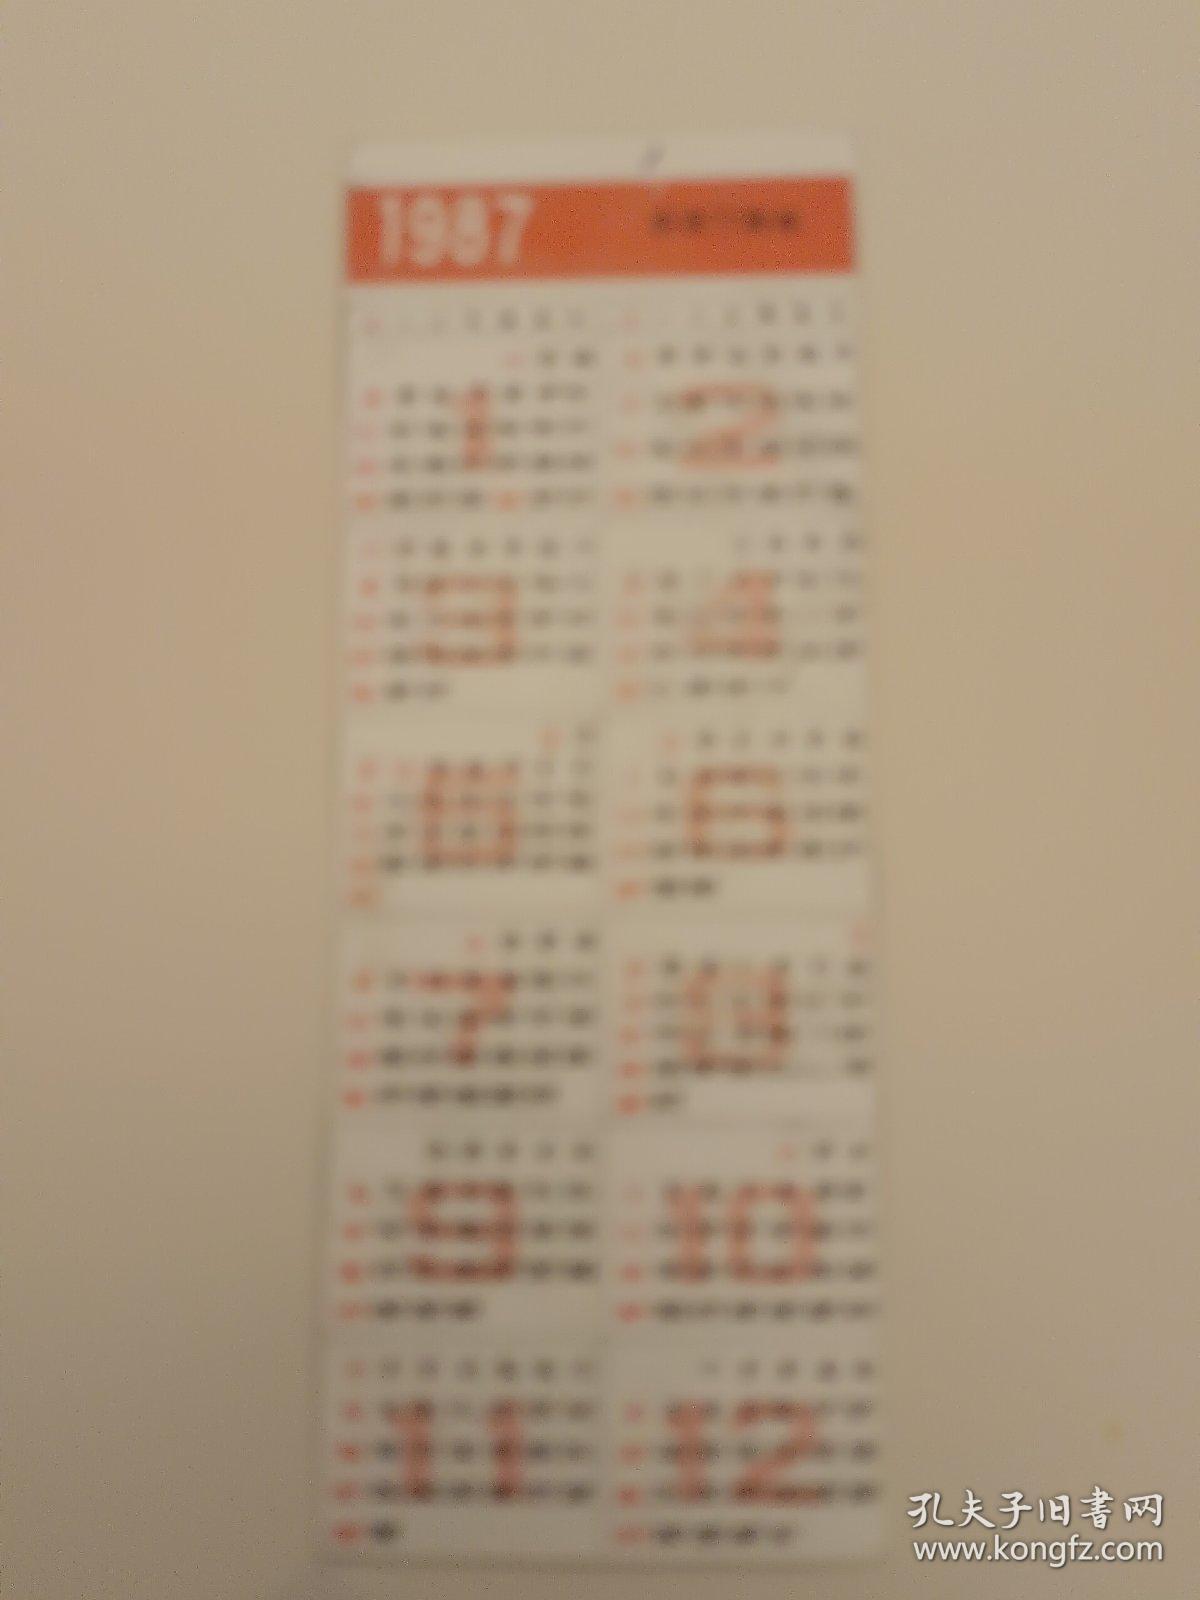 1987日历贺卡 9